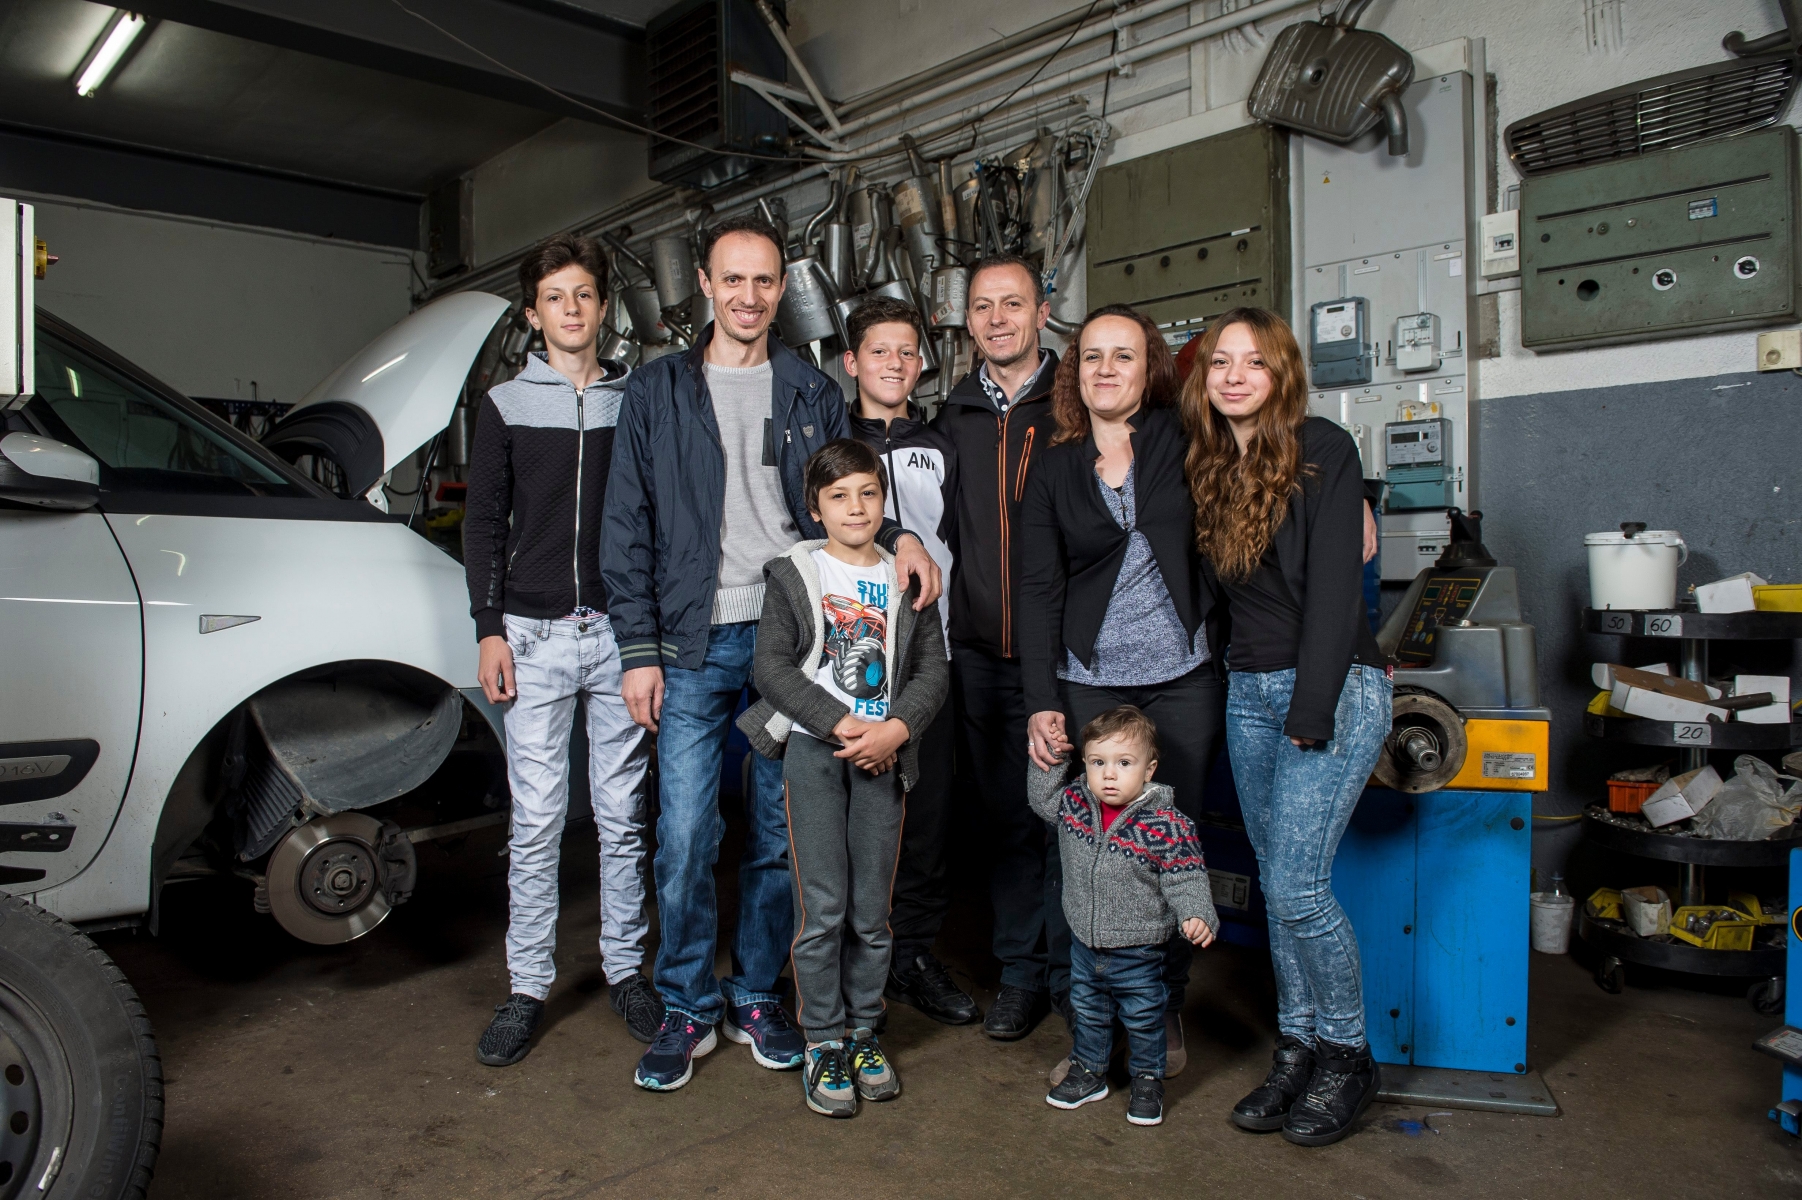 Portrait Besnik Fetahu et de sa famille. 



La Chaux-de-Fonds, le 02.06.2016



Photo : Lucas Vuitel